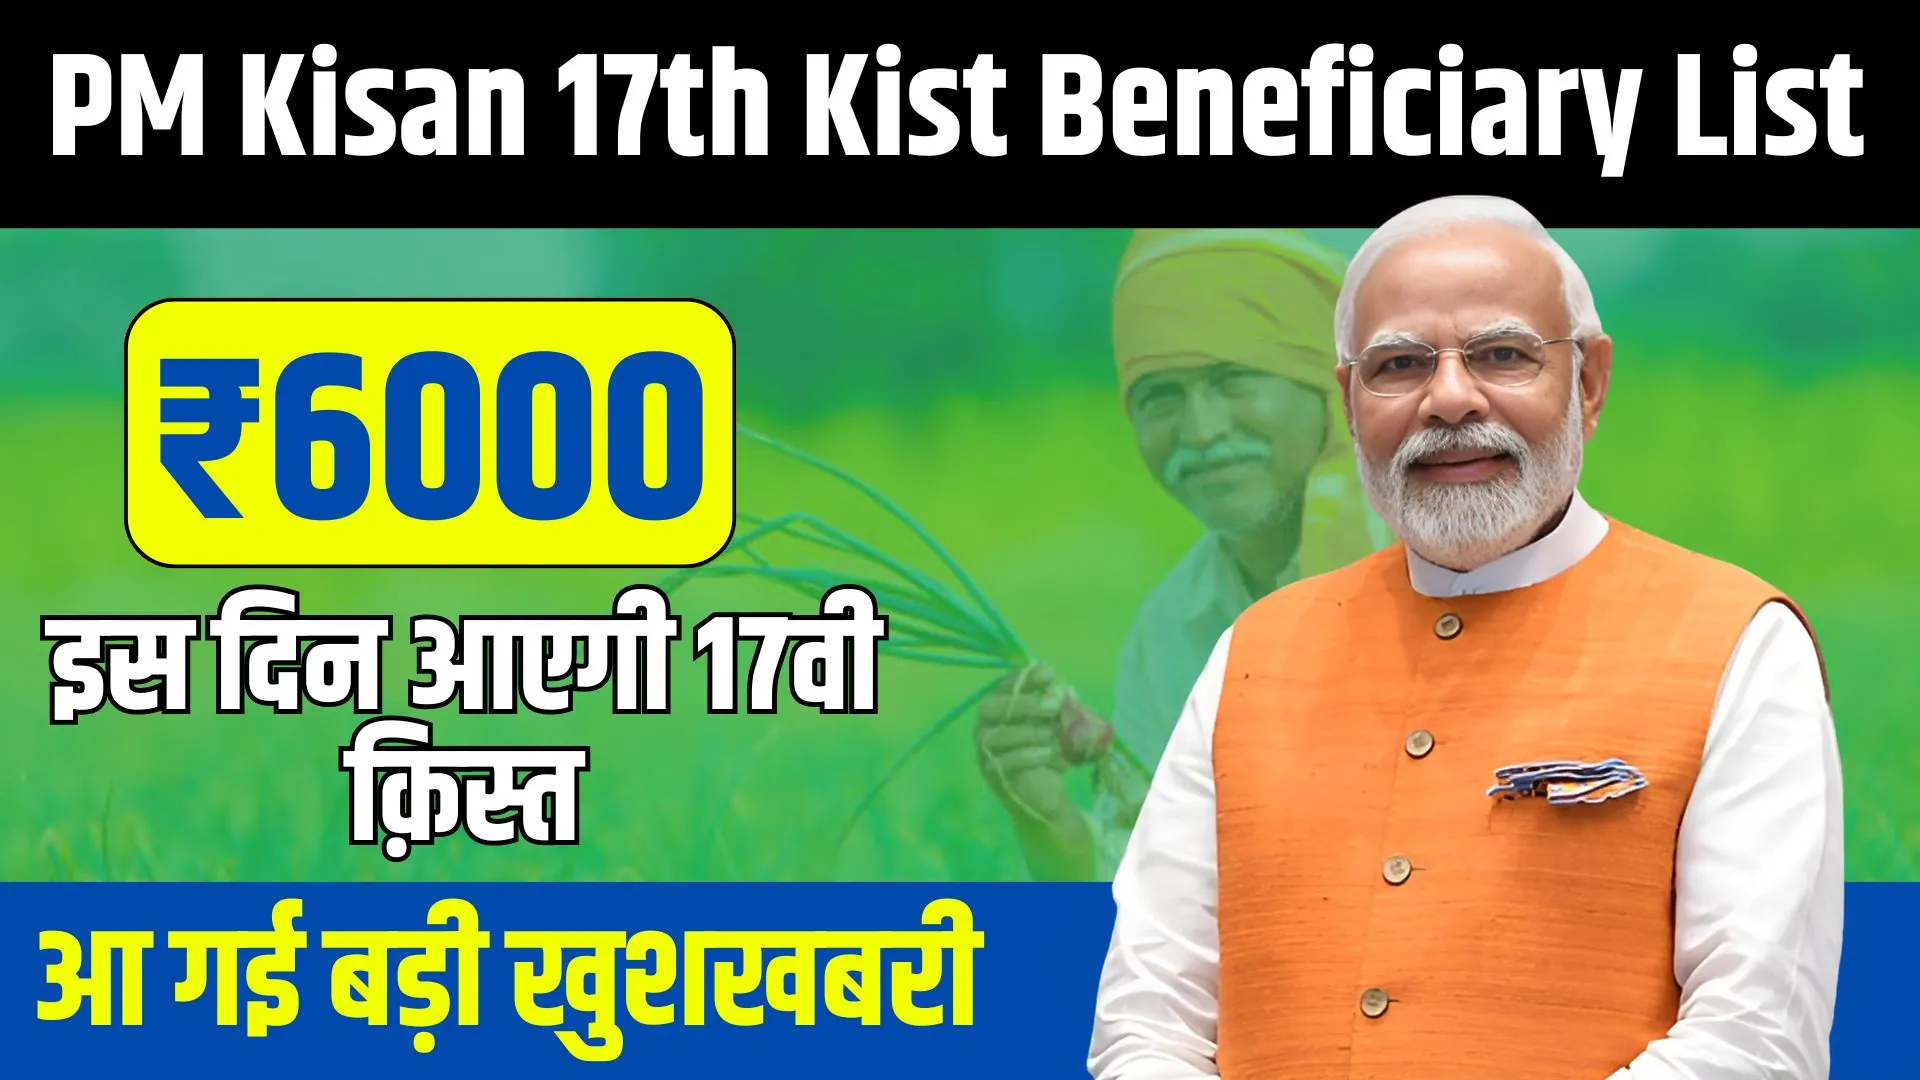 PM Kisan 17th Kist Beneficiary List: पीएम किसान योजना 17वी क़िस्त की बेनिफिशियरी लिस्ट जारी, यहां देखें पूरी जानकारी